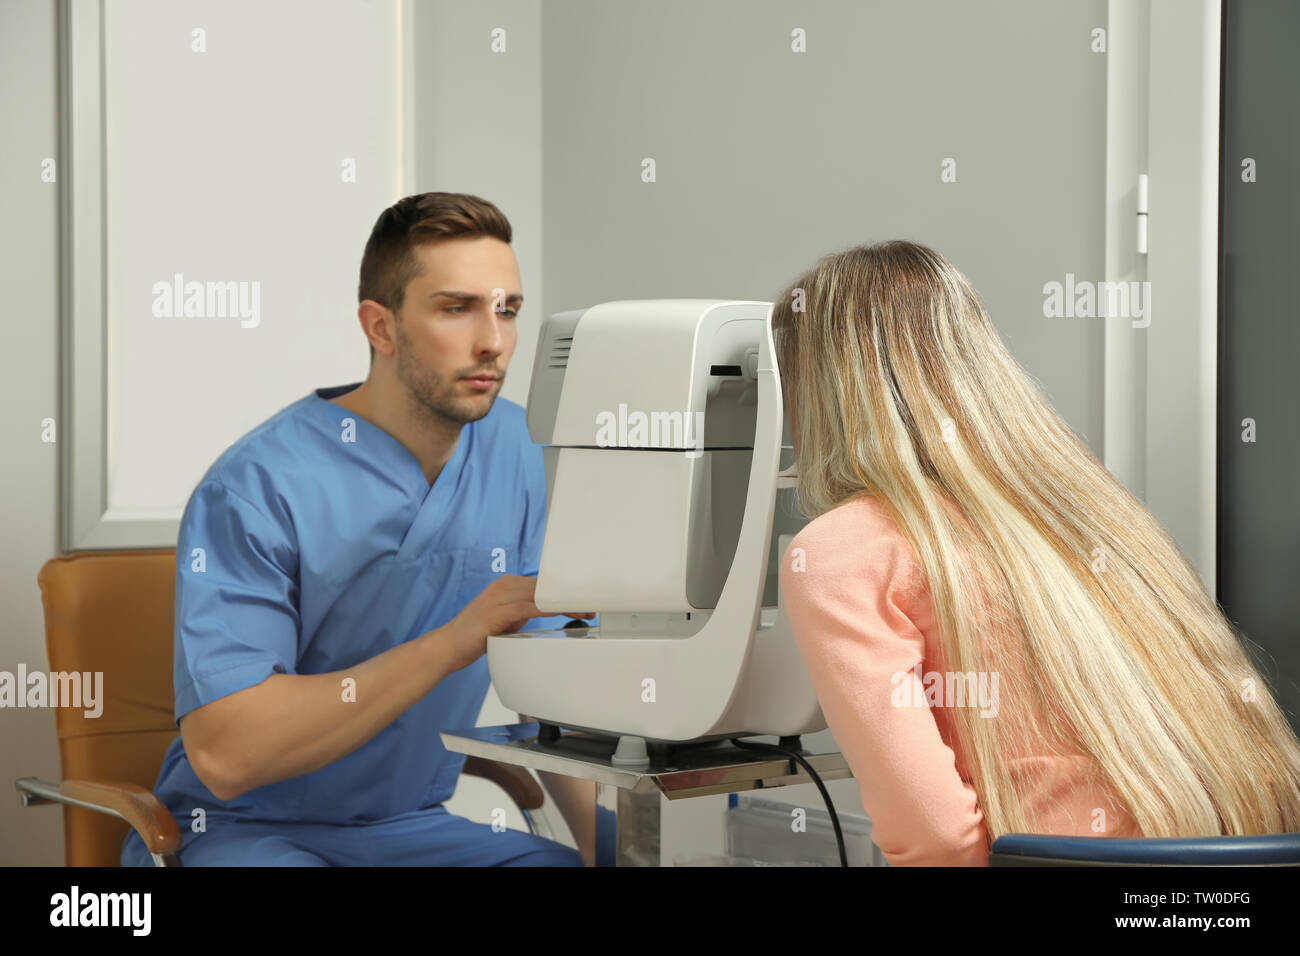 Augenarzt Messung des Augeninnendrucks der jungen Frau in der Klinik Stockfoto